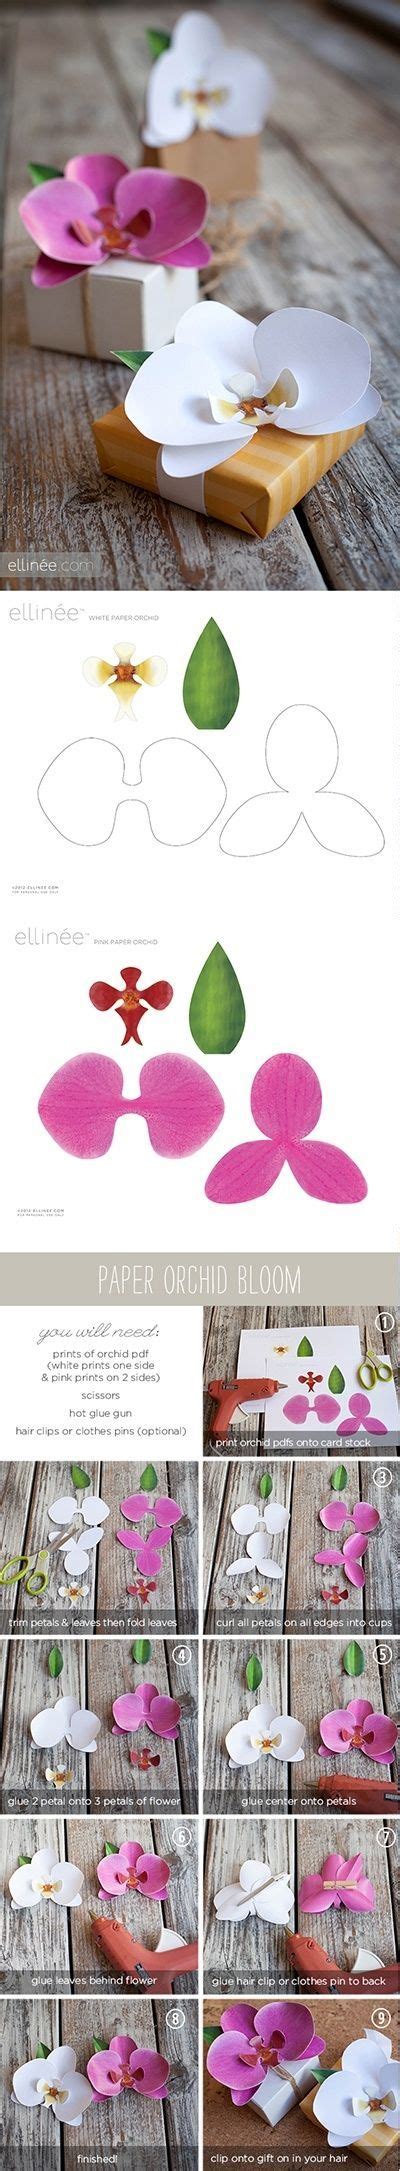 paper orchids tutorial   printable  ellinee